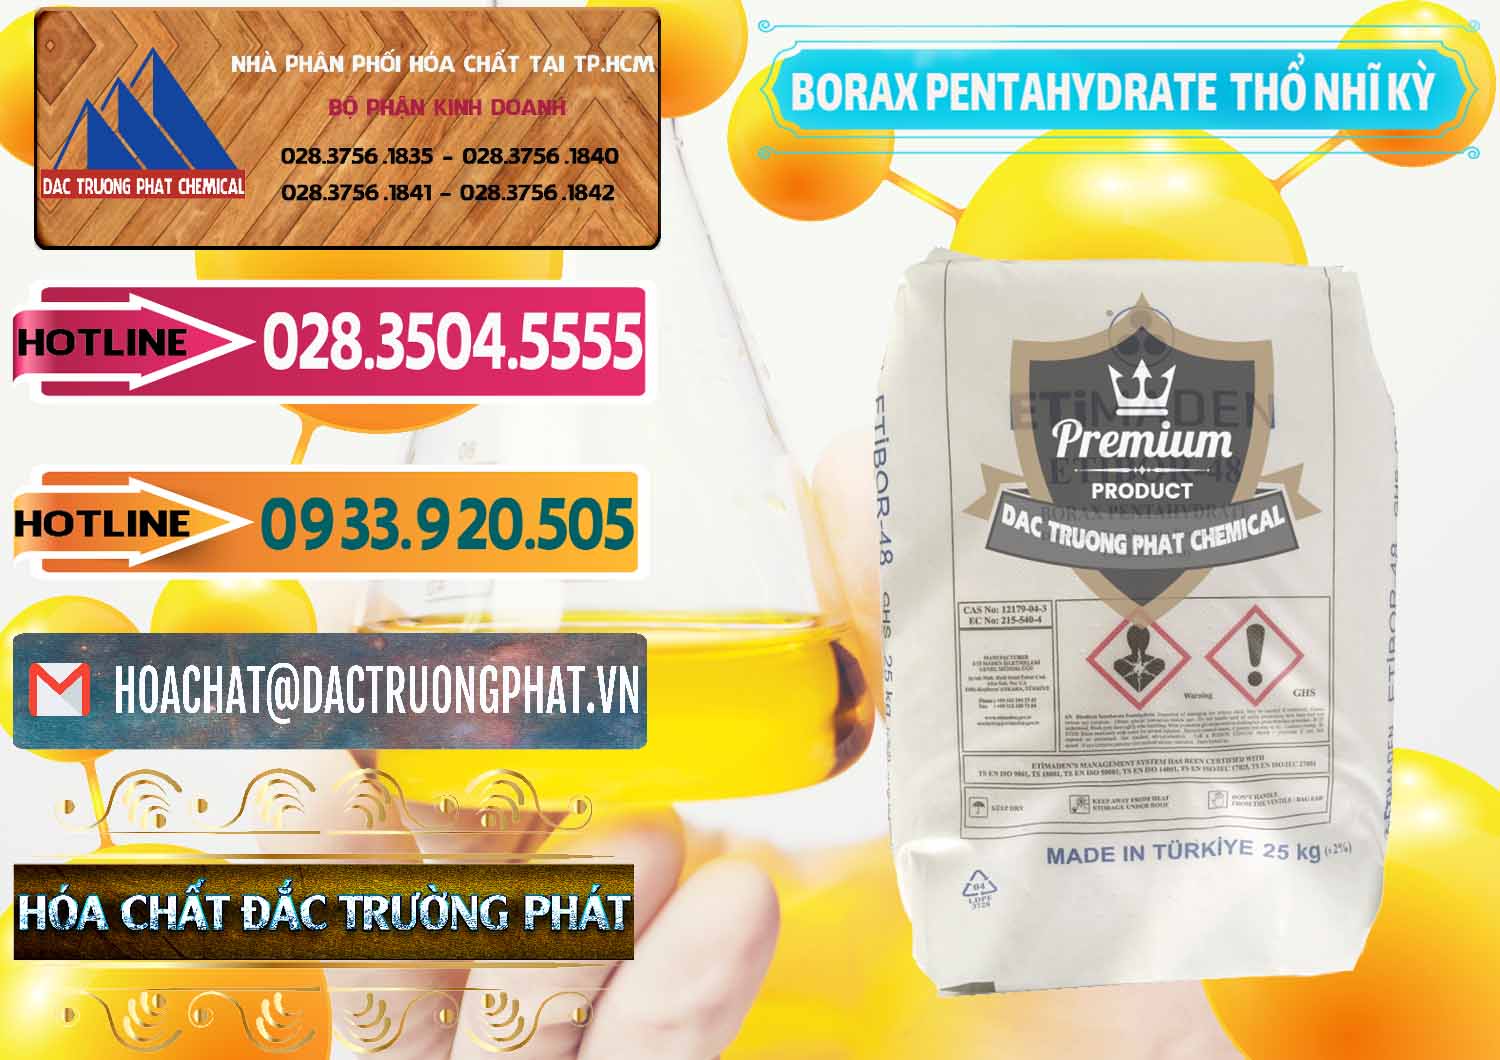 Nơi chuyên cung ứng và bán Borax Pentahydrate Thổ Nhĩ Kỳ Turkey - 0431 - Cty phân phối và kinh doanh hóa chất tại TP.HCM - dactruongphat.vn